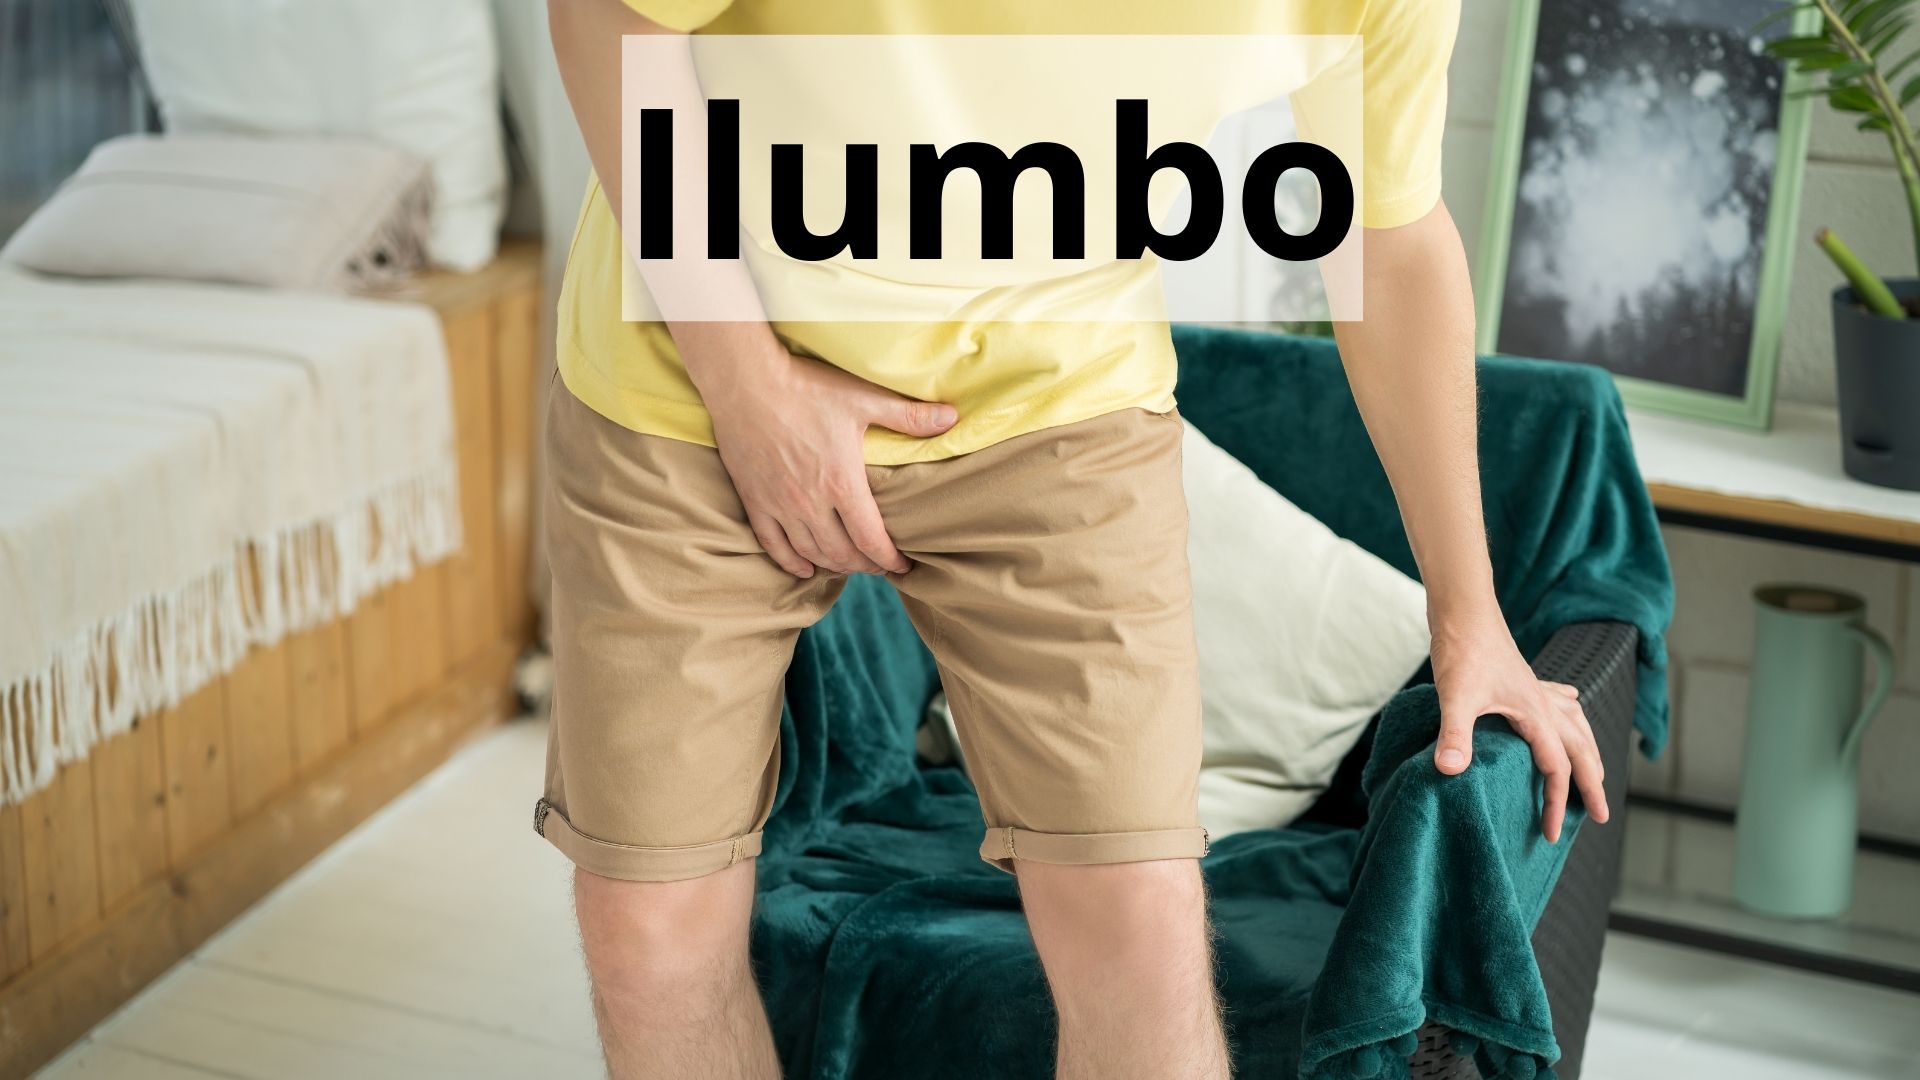 ilumbo